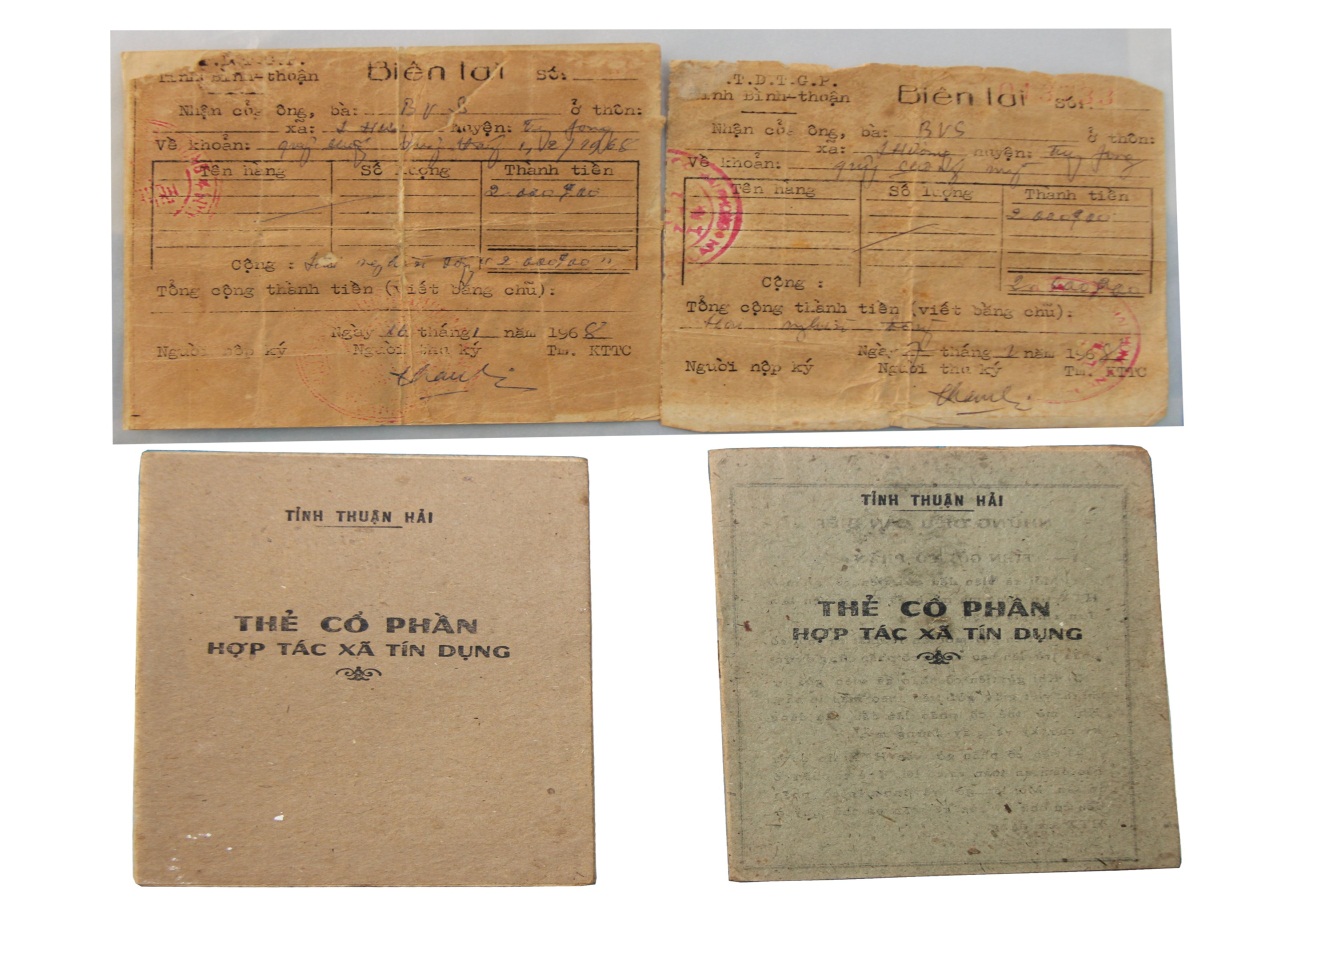 Bảo quản khoa học hiện vật giấy tại Bảo tàng tỉnh Bình Thuận